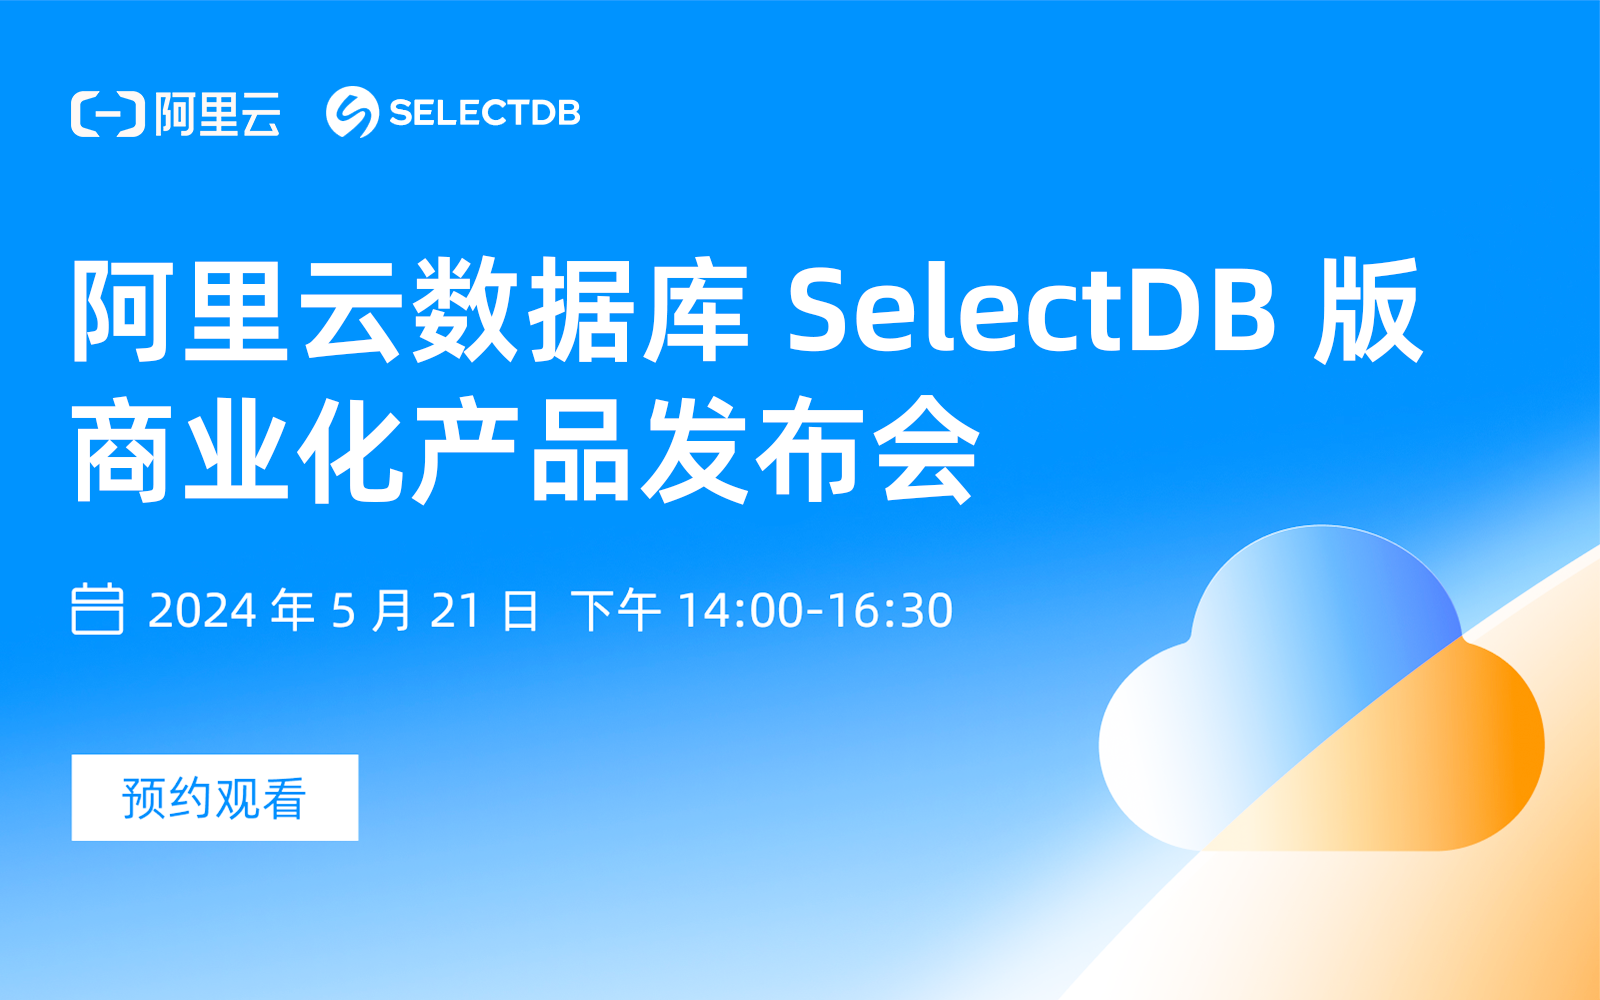 阿里云 SelectDB 商业化产品发布会